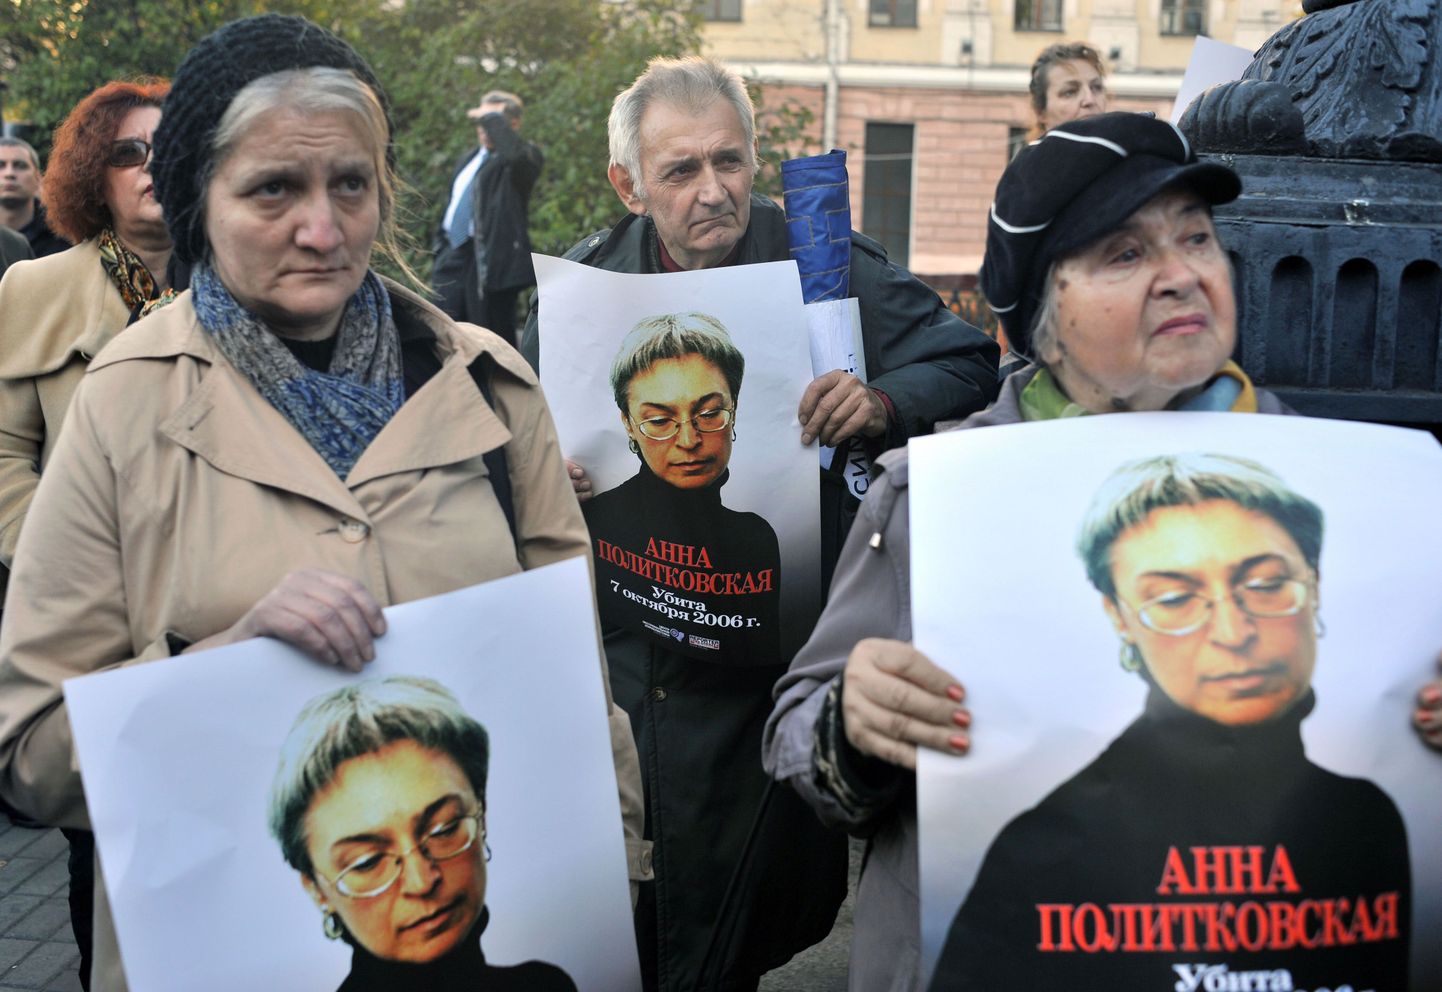 Inimesed ajakirjaniku Anna Politkovskaja piltidega 7. oktoobril 2010 ehk neli aastat pärast veretööd.